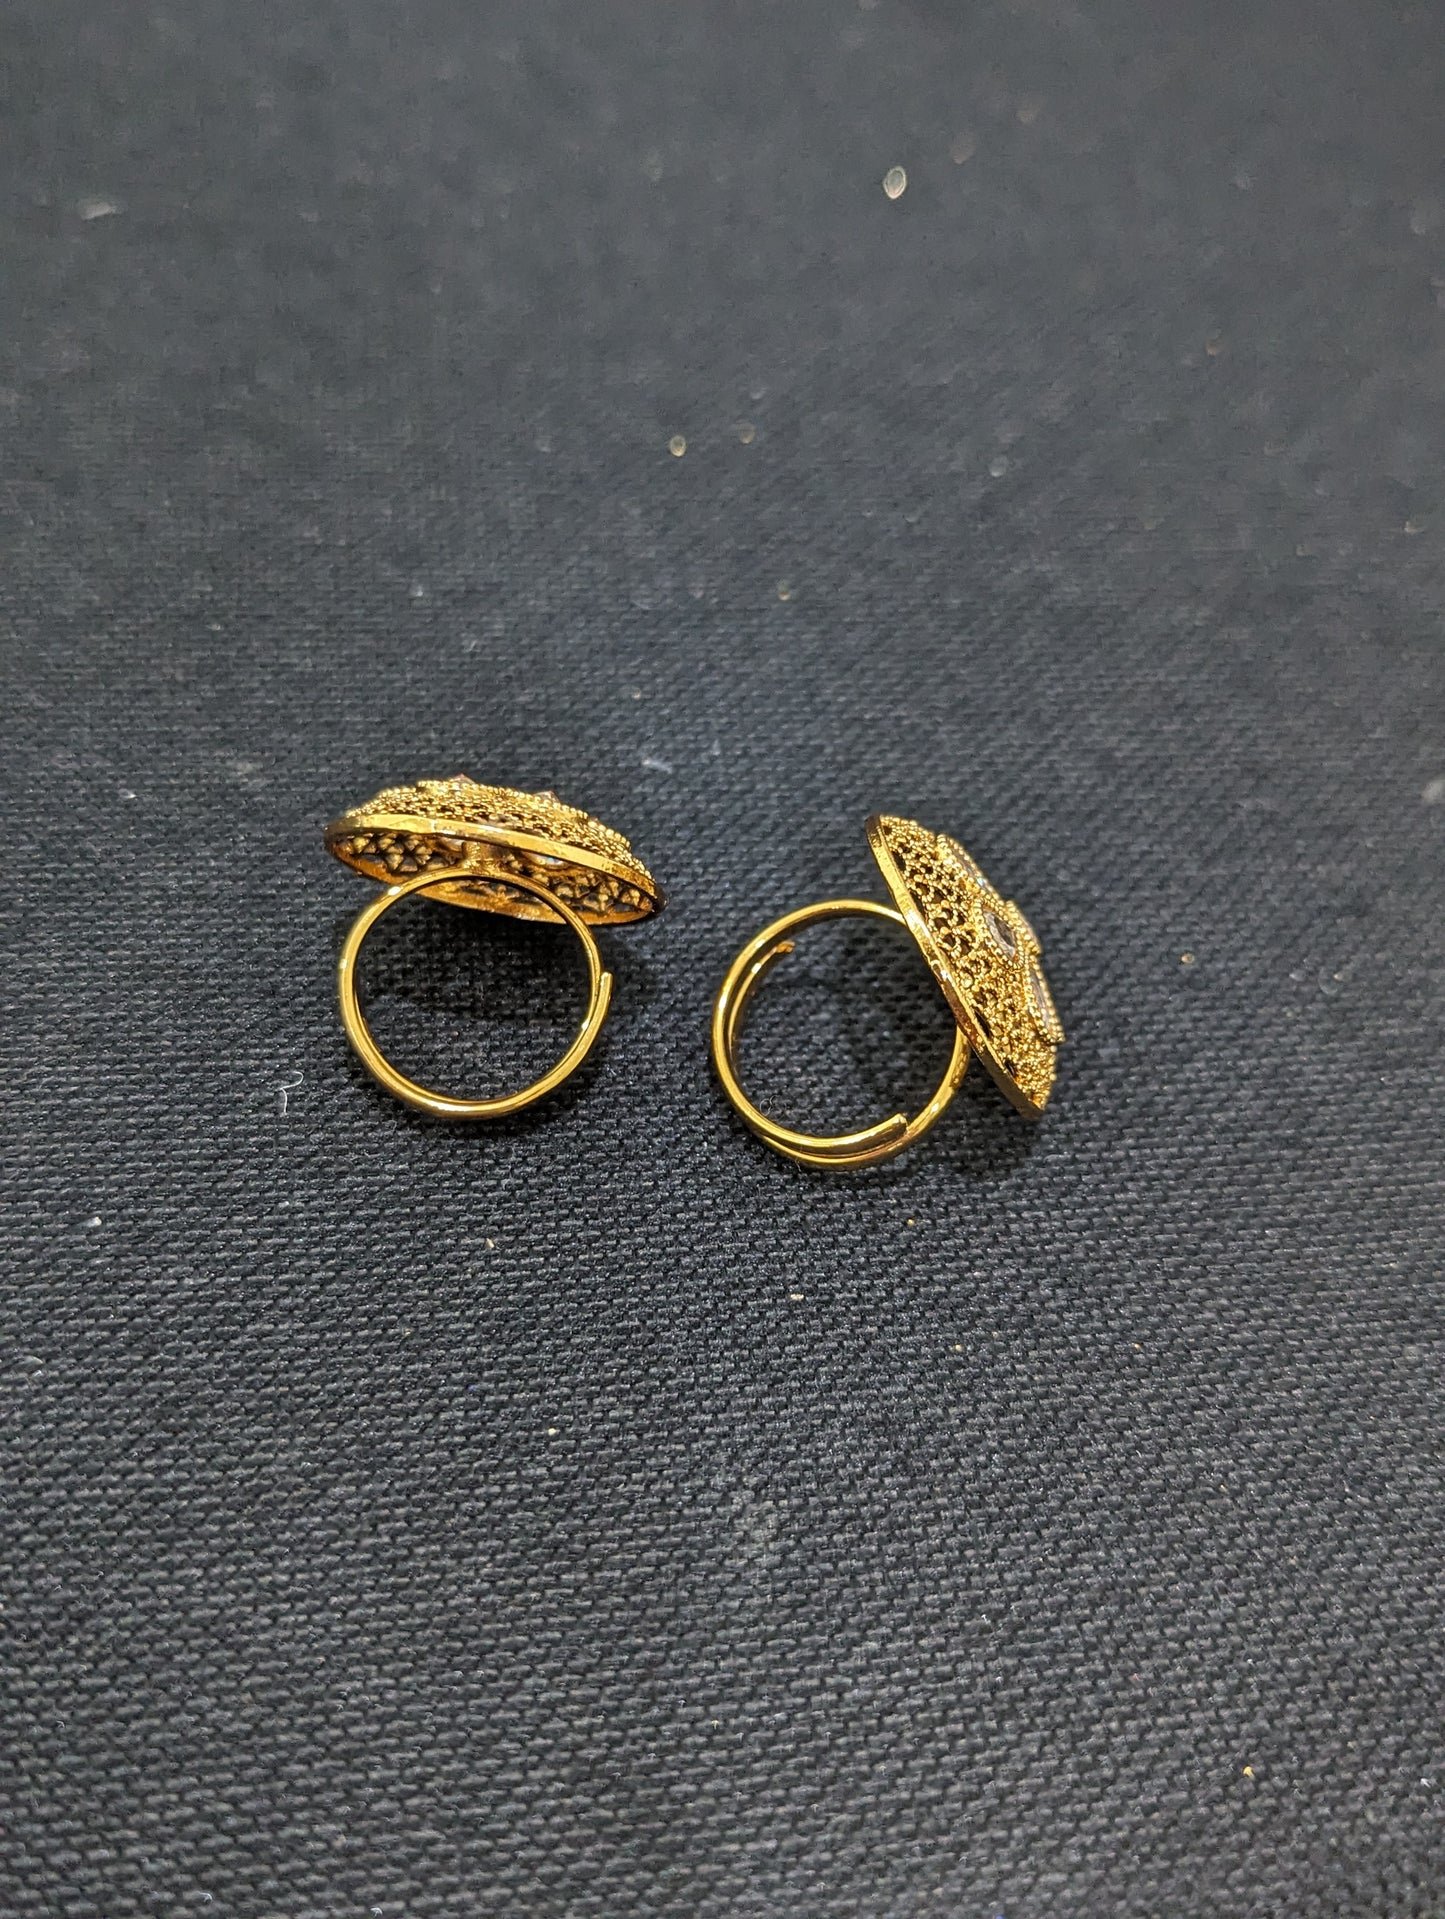 Flower design Polki stone Gold plated adjustable Finger rings